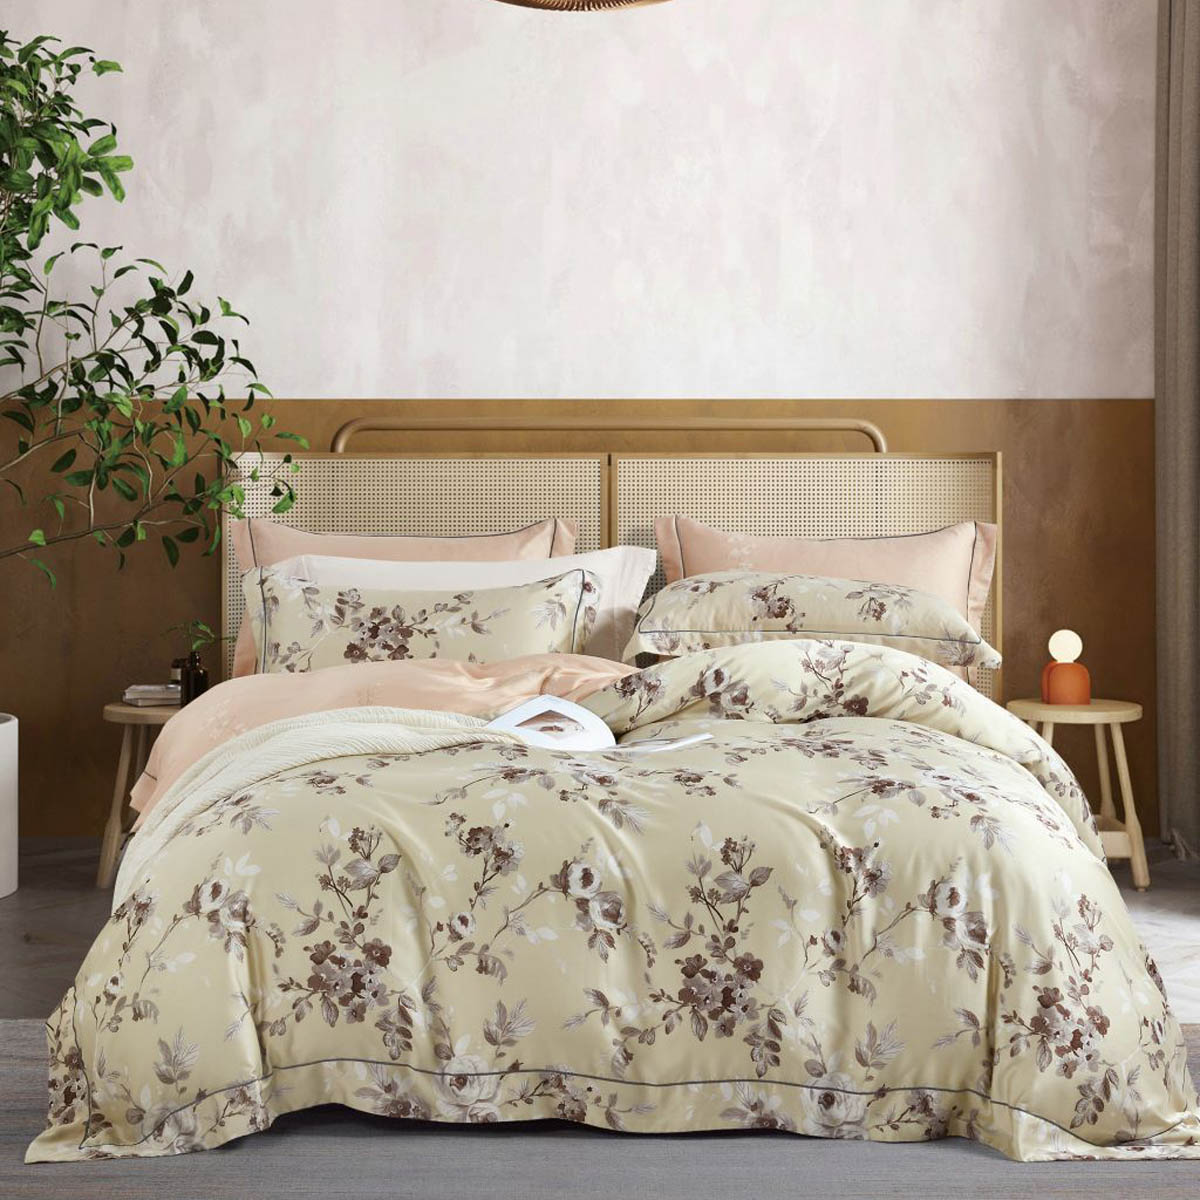 

Комплект постельного белья евро Asabella, цветы на жемчужно-бежевом, Бежевый